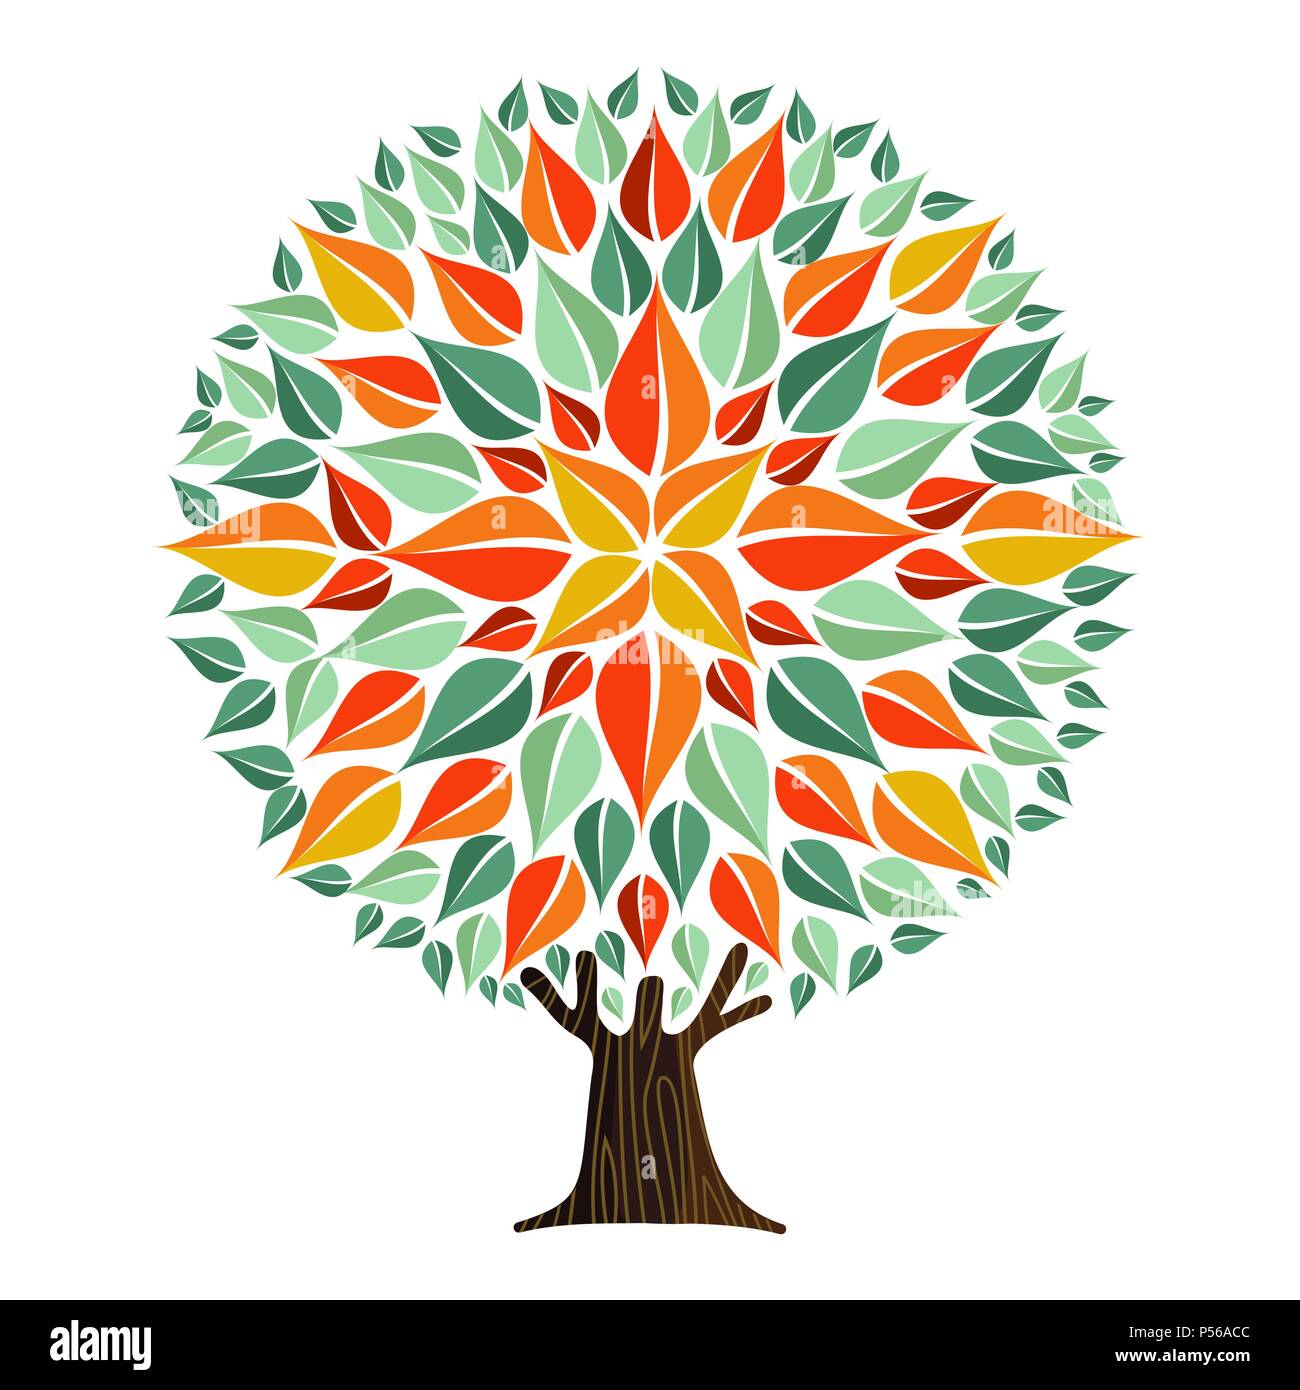 Baum Mandala mit Herbst Farbe verlässt. Konzept Abbildung für Umweltschutz oder der Natur helfen. EPS 10 Vektor. Stock Vektor